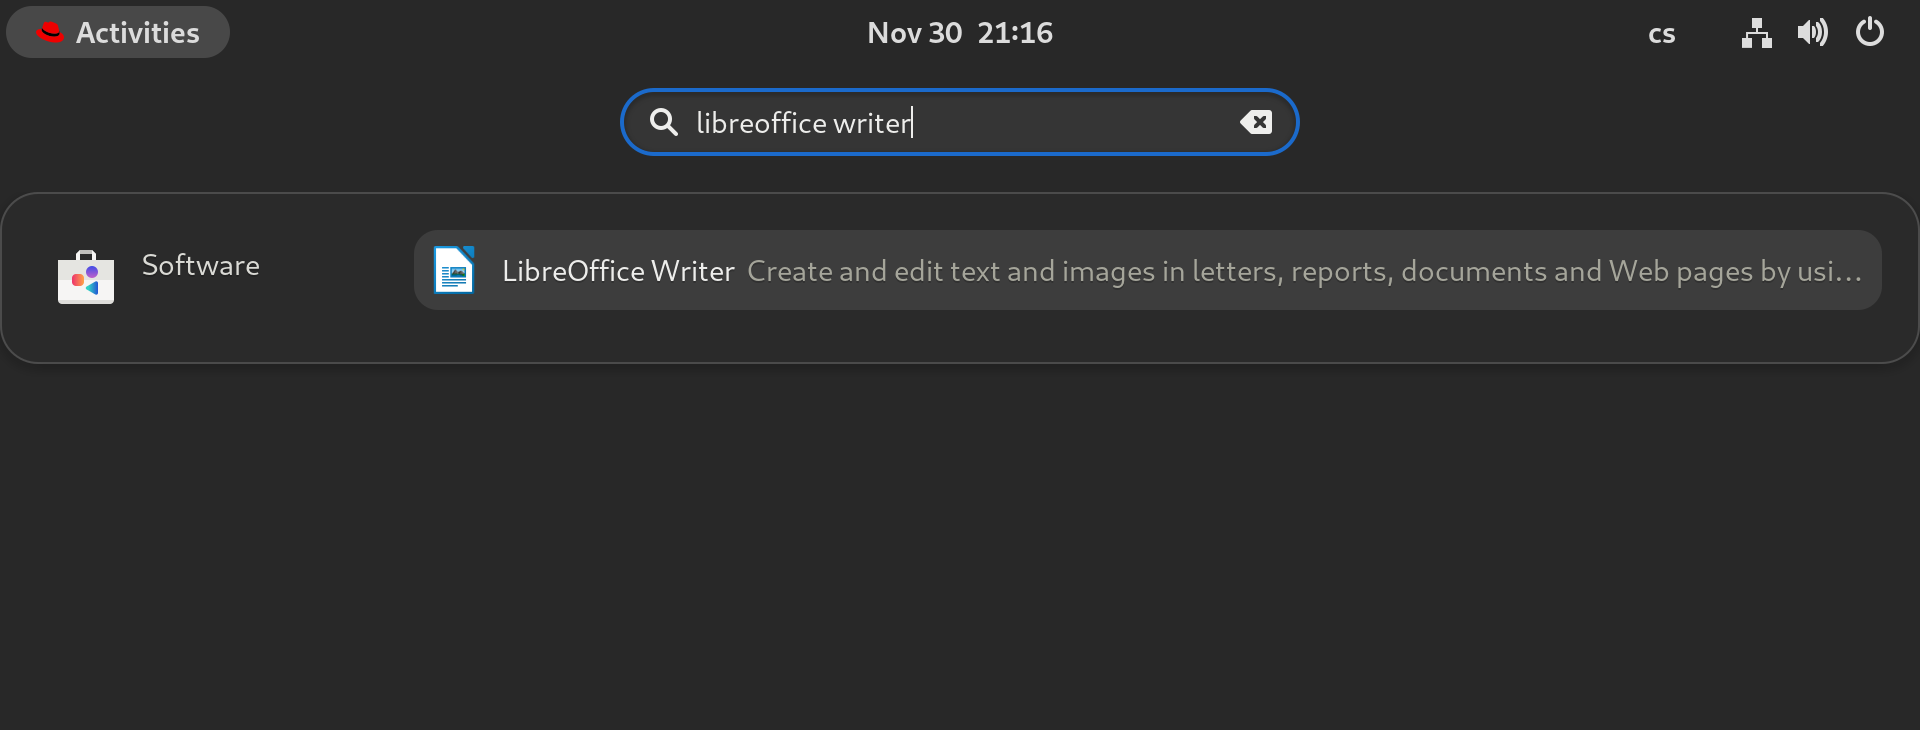 LibreOffice Writer dans les résultats de recherche